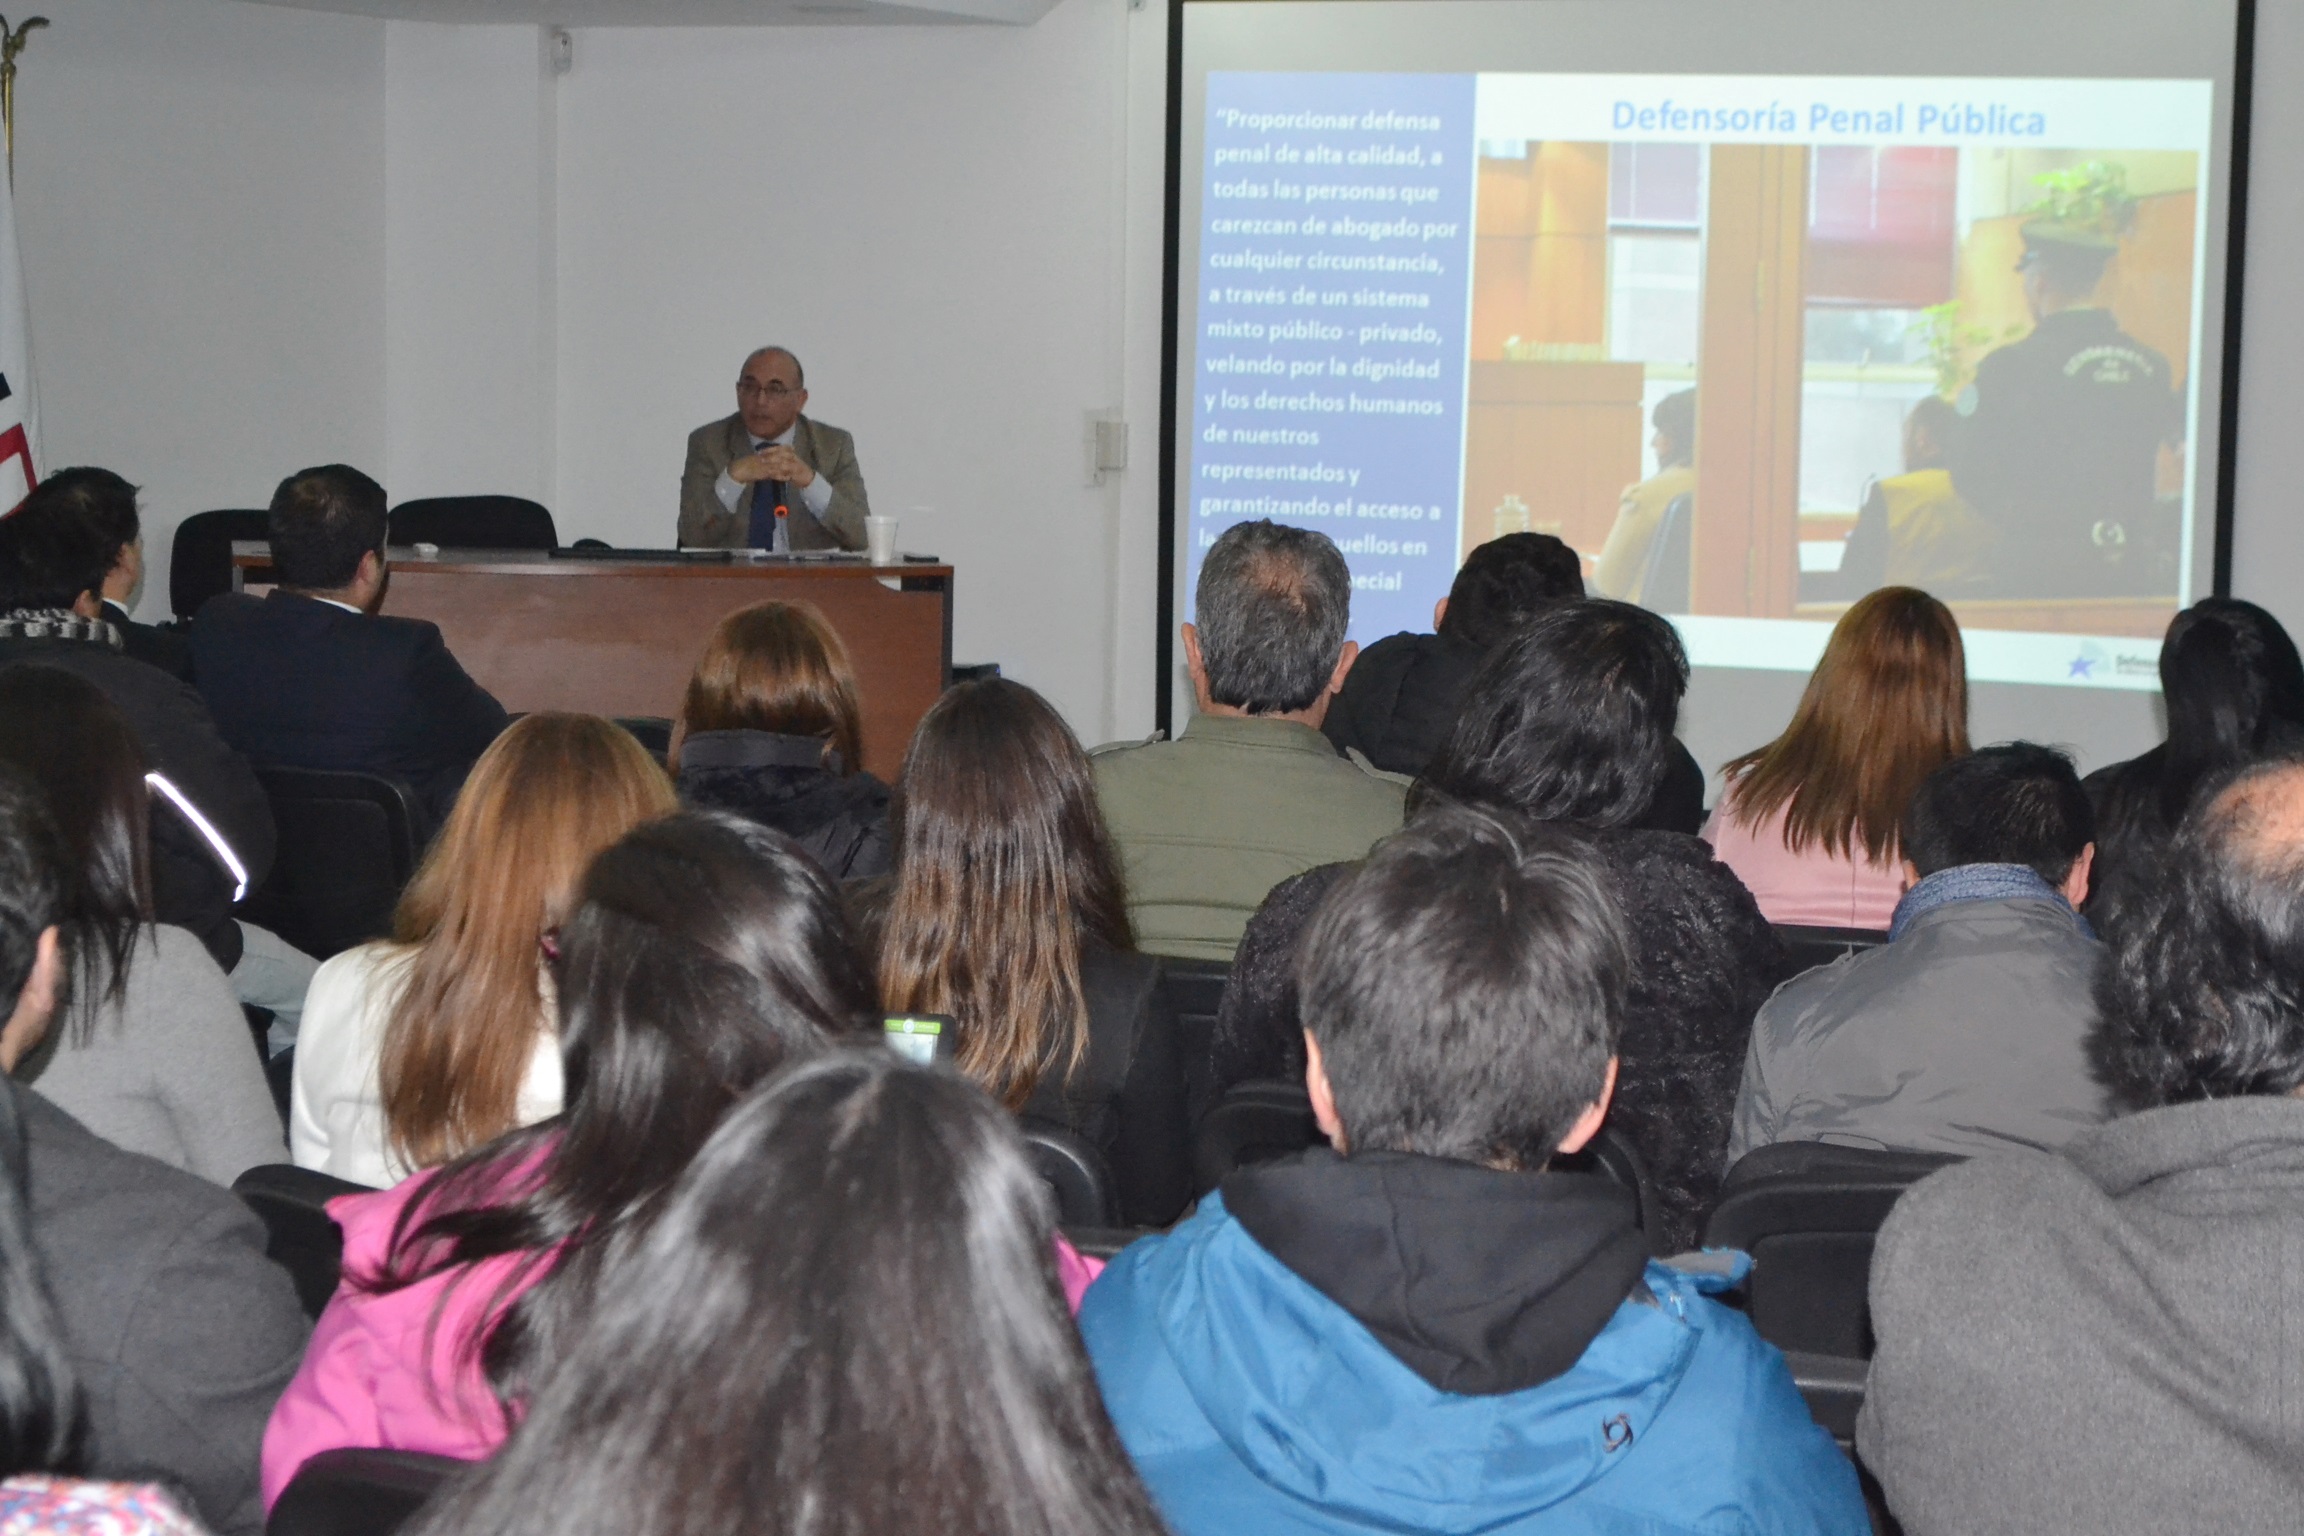 Más de 70 personas asistieron a la charla sobre la Defensoría y el "Proyecto Inocentes".